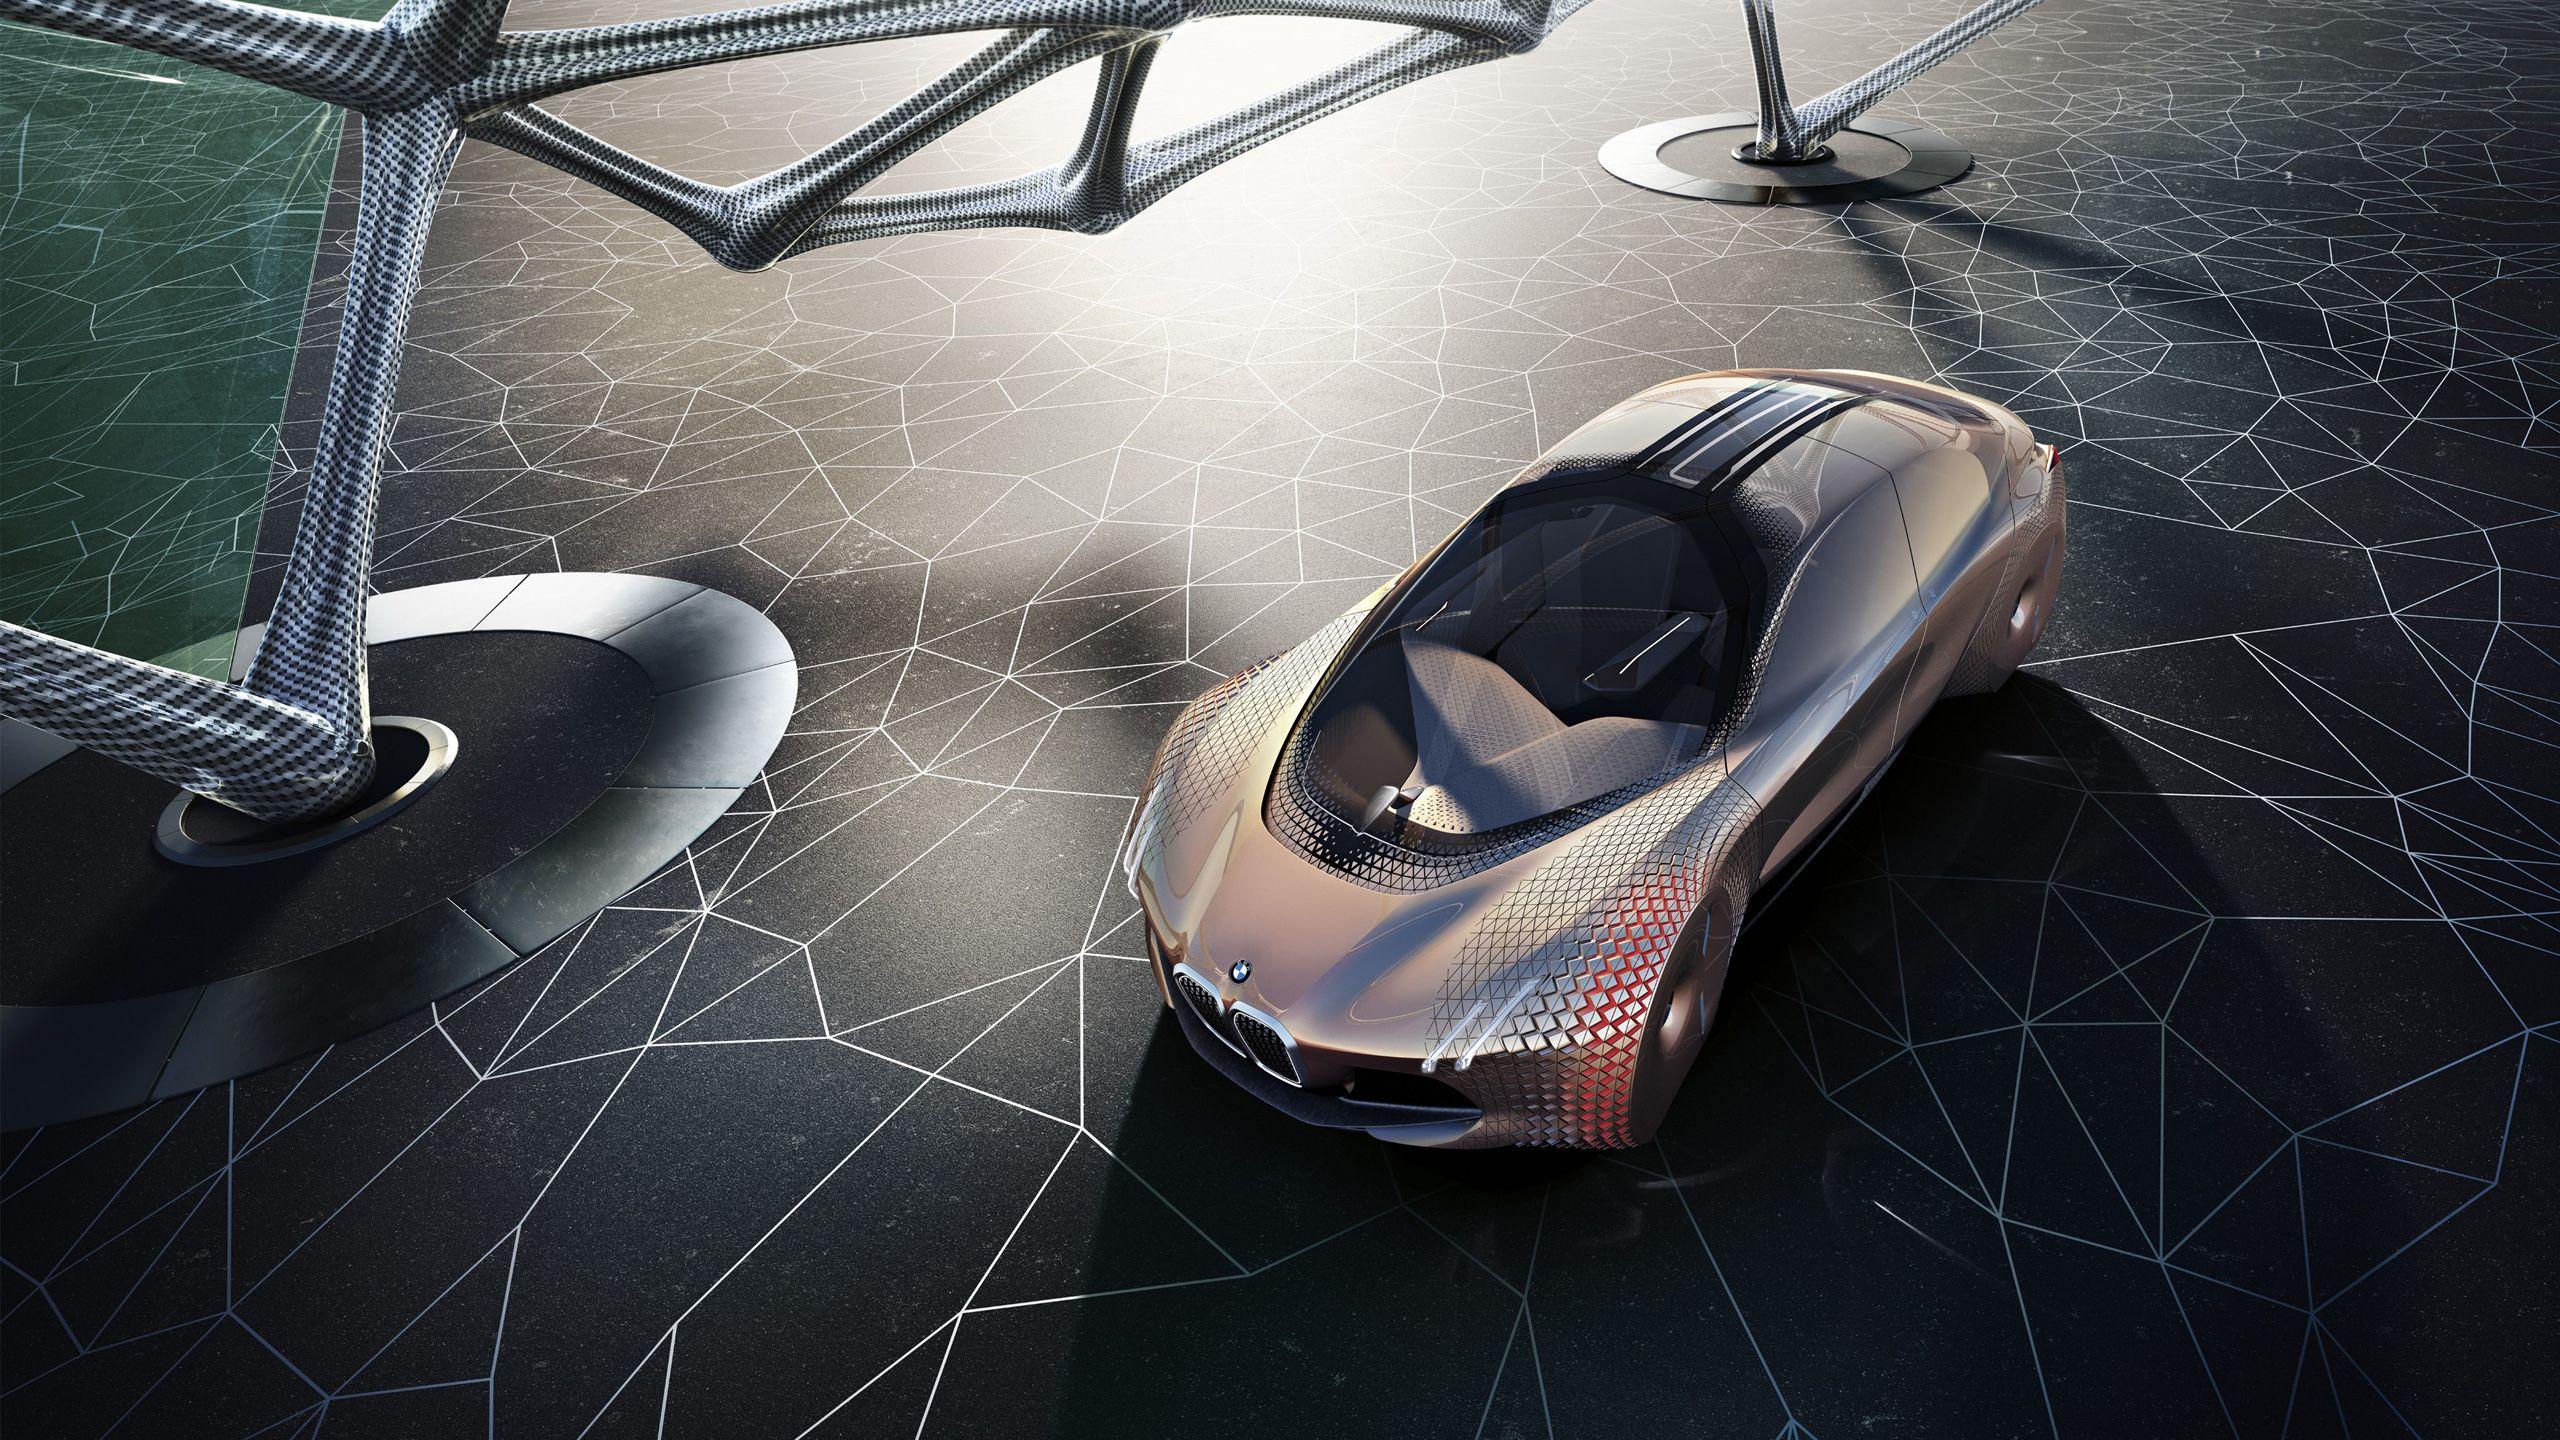 BMW Vision Next 100 Concept Car Wallpaper. HD Car Wallpaper